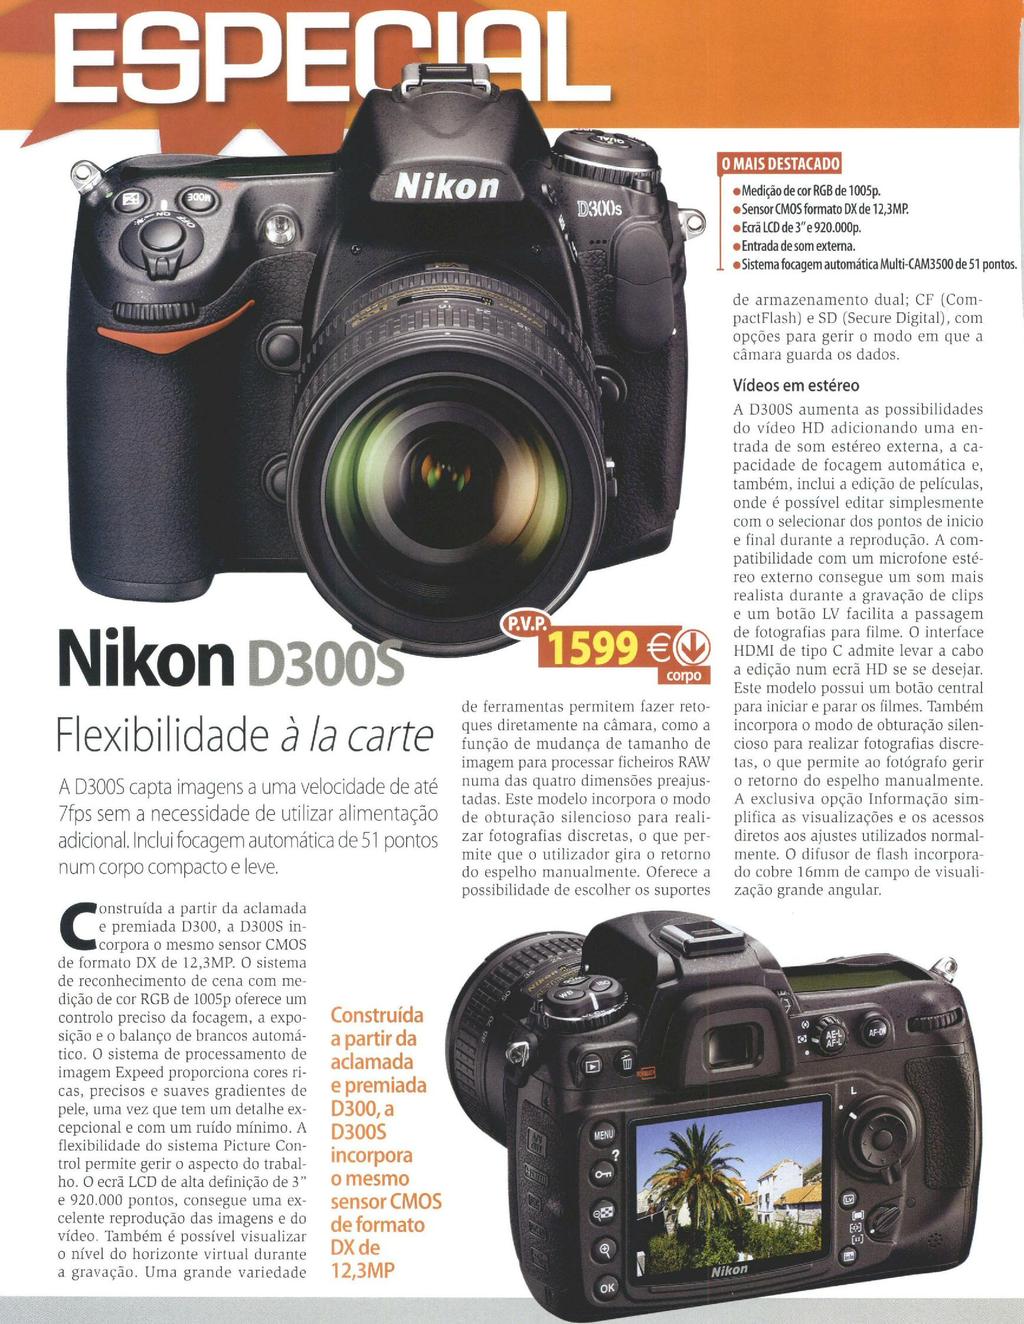 E claro, a garantia Nikon garante a sua qualidade, com uns atributos que a situam muito perto da sua irmã, a D9O, dentro do segmento intermédio.